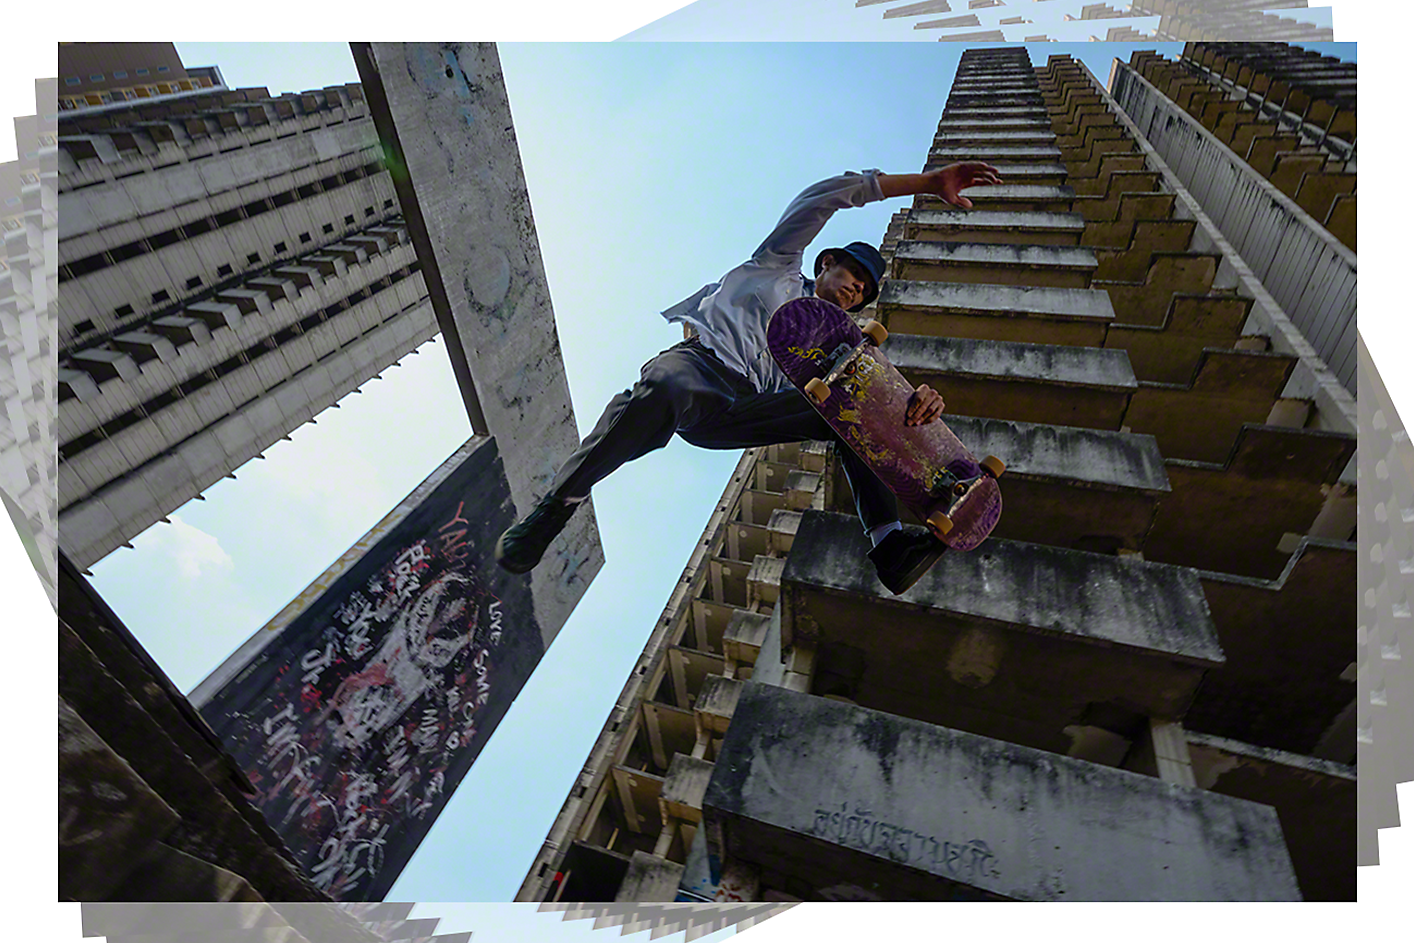 Dramatisk seriebildtagning av en skejtare som gör ett trick i en stadsmiljö